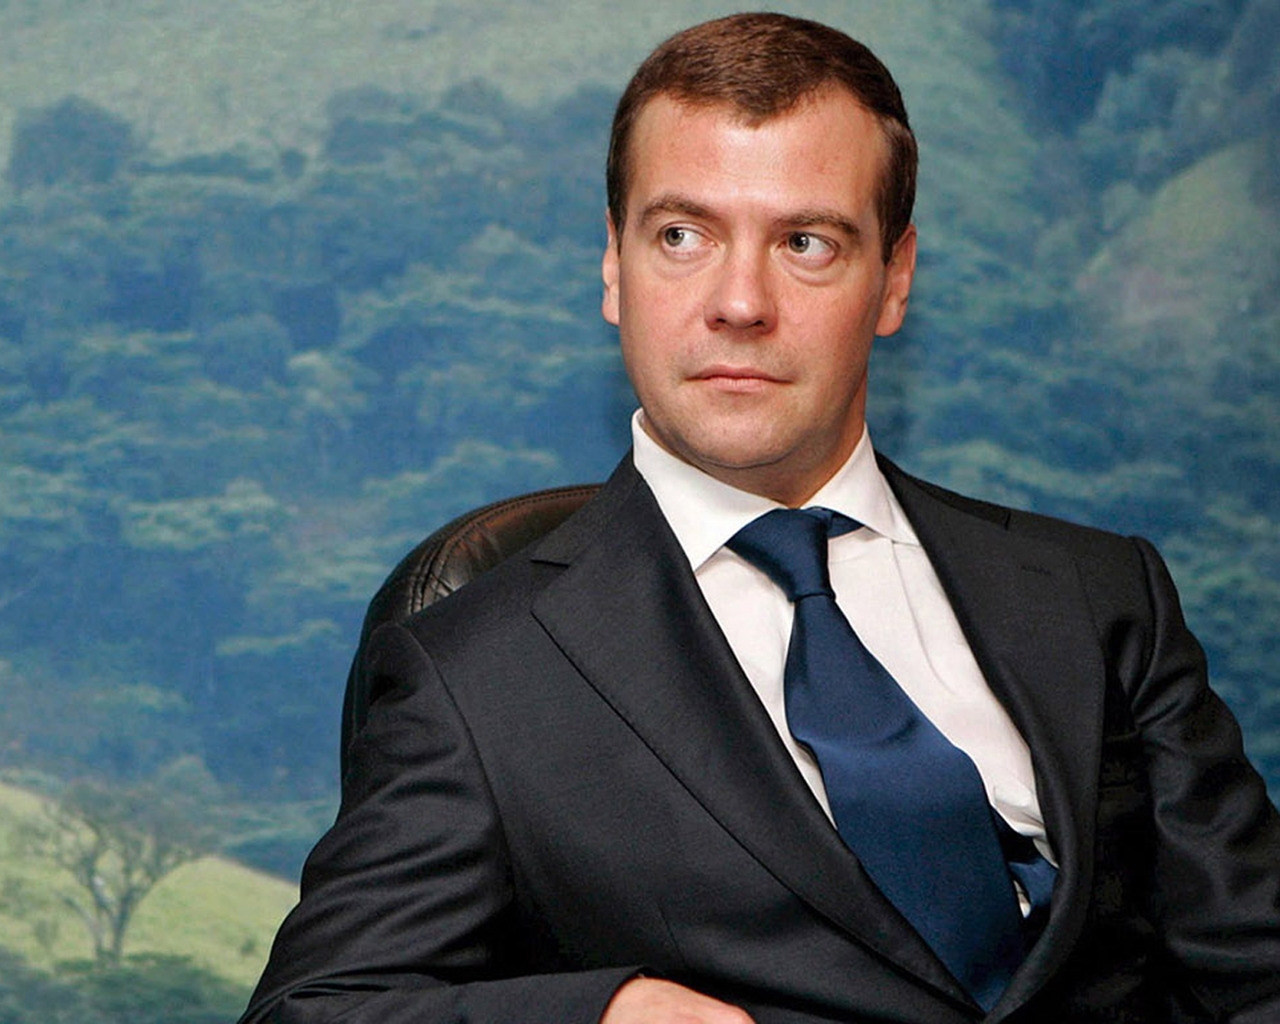 Dmitry Medvedev for 1280 x 1024 resolution